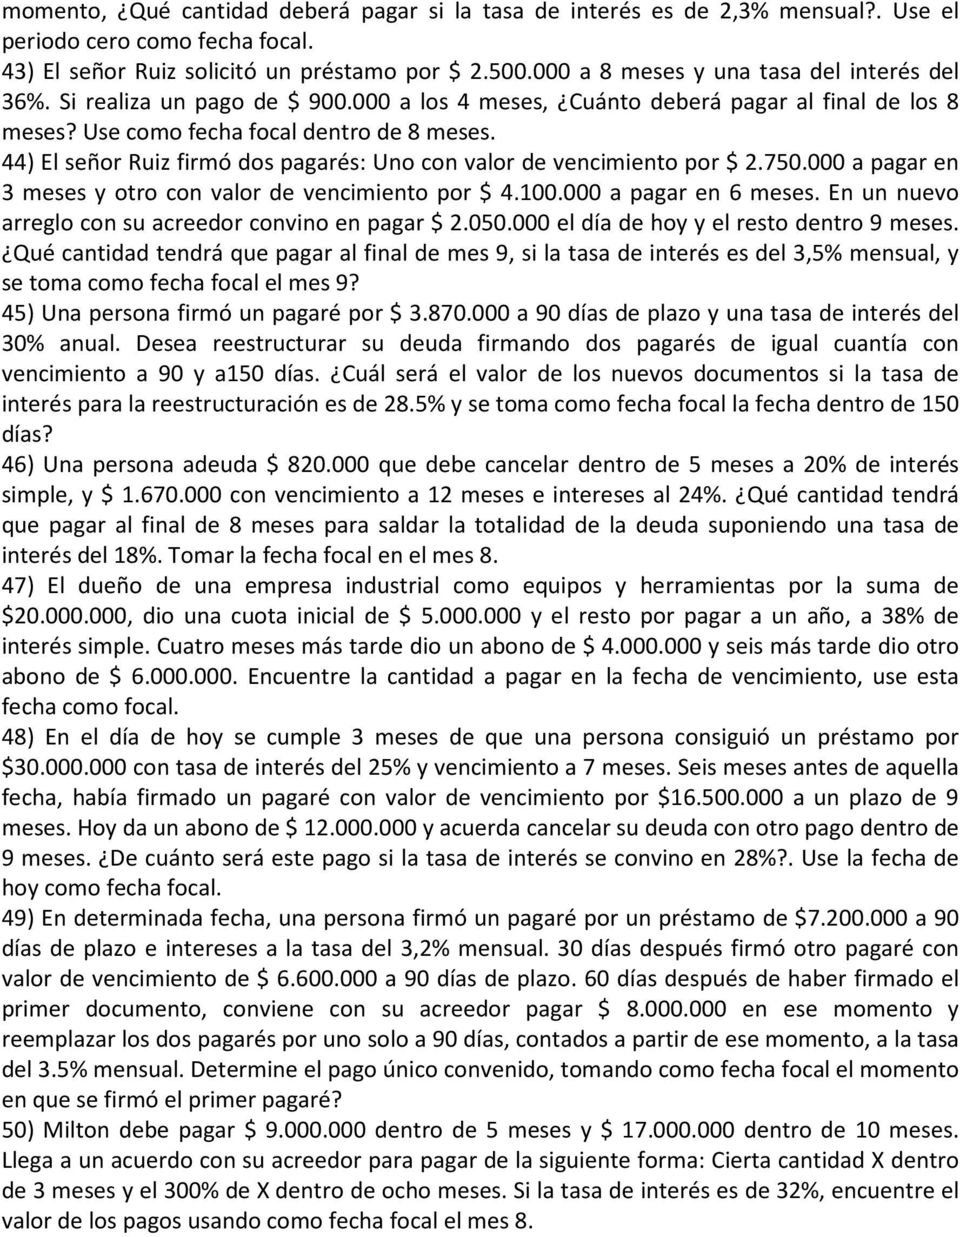 44) El señor Ruiz firmó dos pagarés: Uno con valor de vencimiento por $ 2.750.000 a pagar en 3 meses y otro con valor de vencimiento por $ 4.100.000 a pagar en 6 meses.